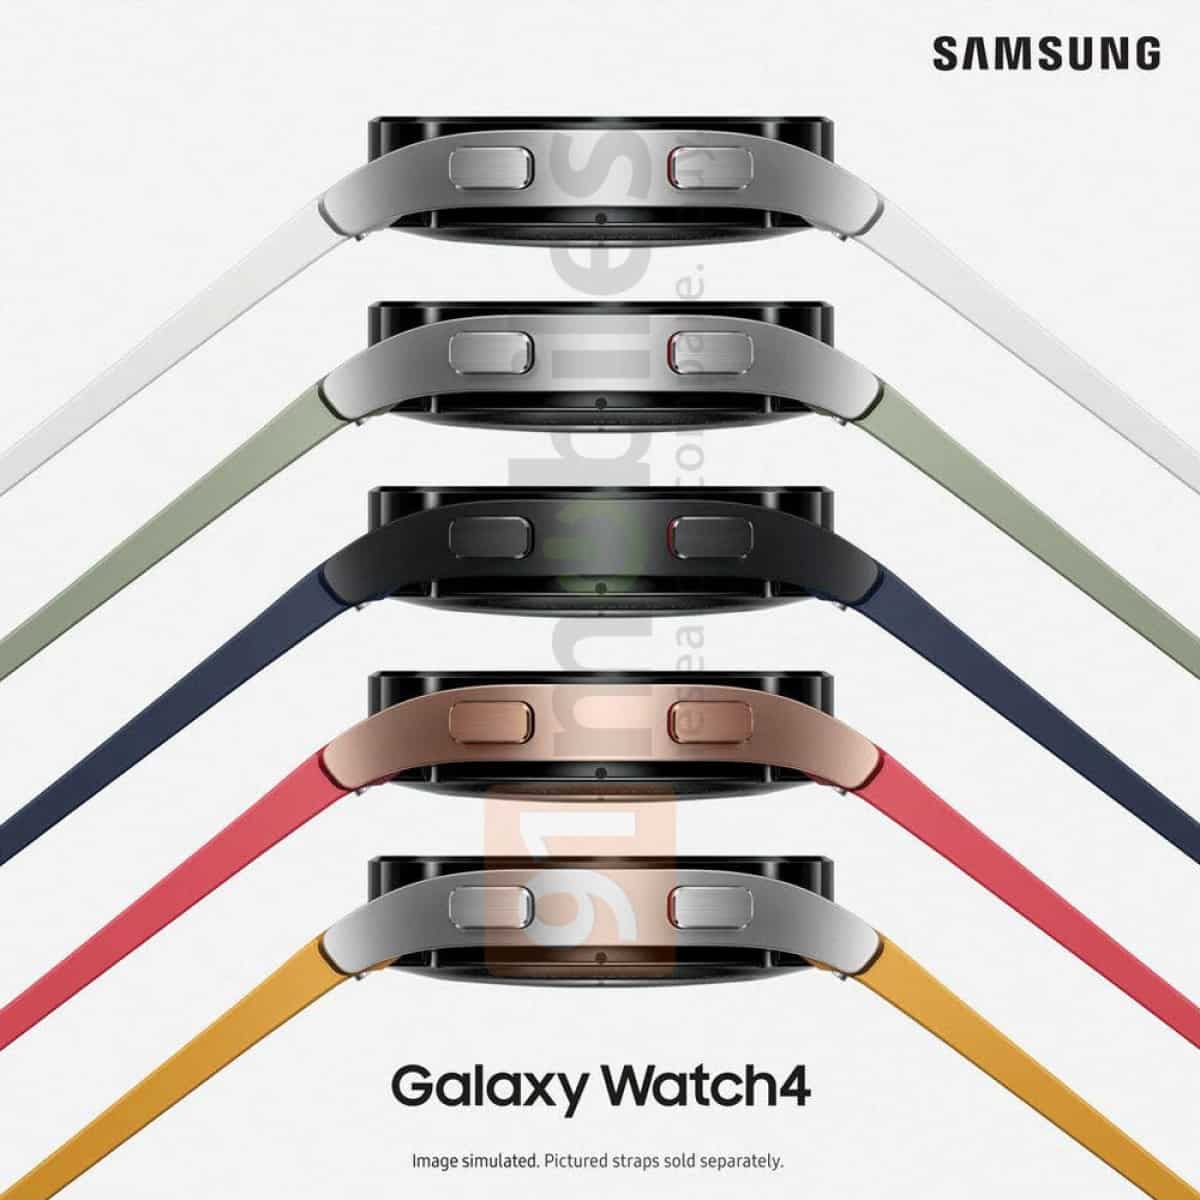 Galaxy Watch 4 akıllı saate ait olduğu söylenen görseller sızdı